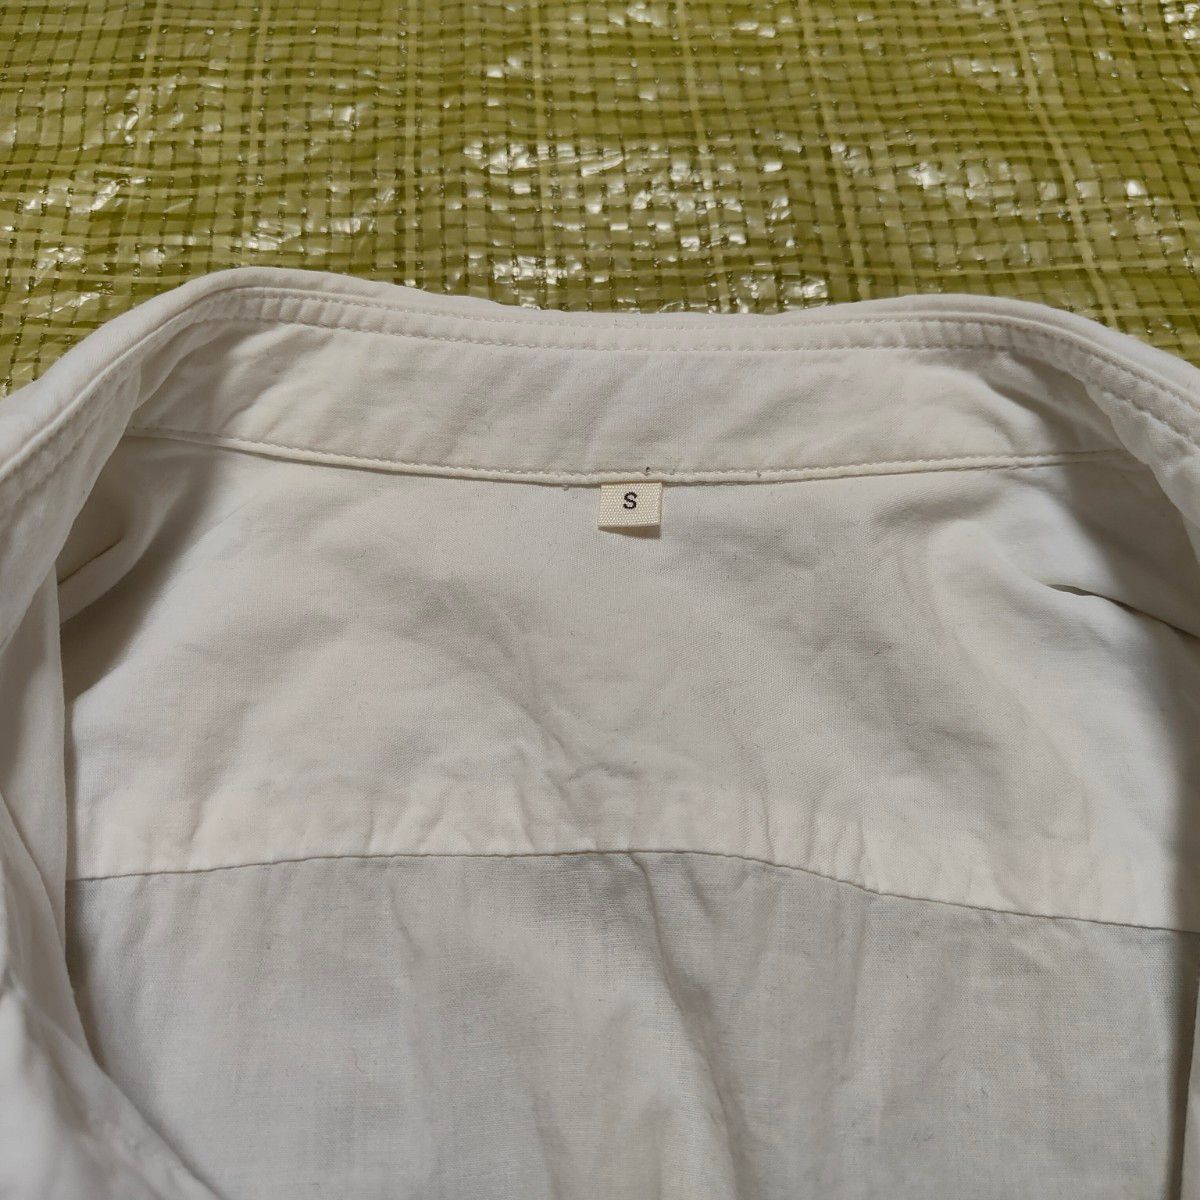 【訳あり】TOPVALU トップバリュ 半袖ボタンシャツ メンズ S 80〜88 白 ポケット付き イオン AEON